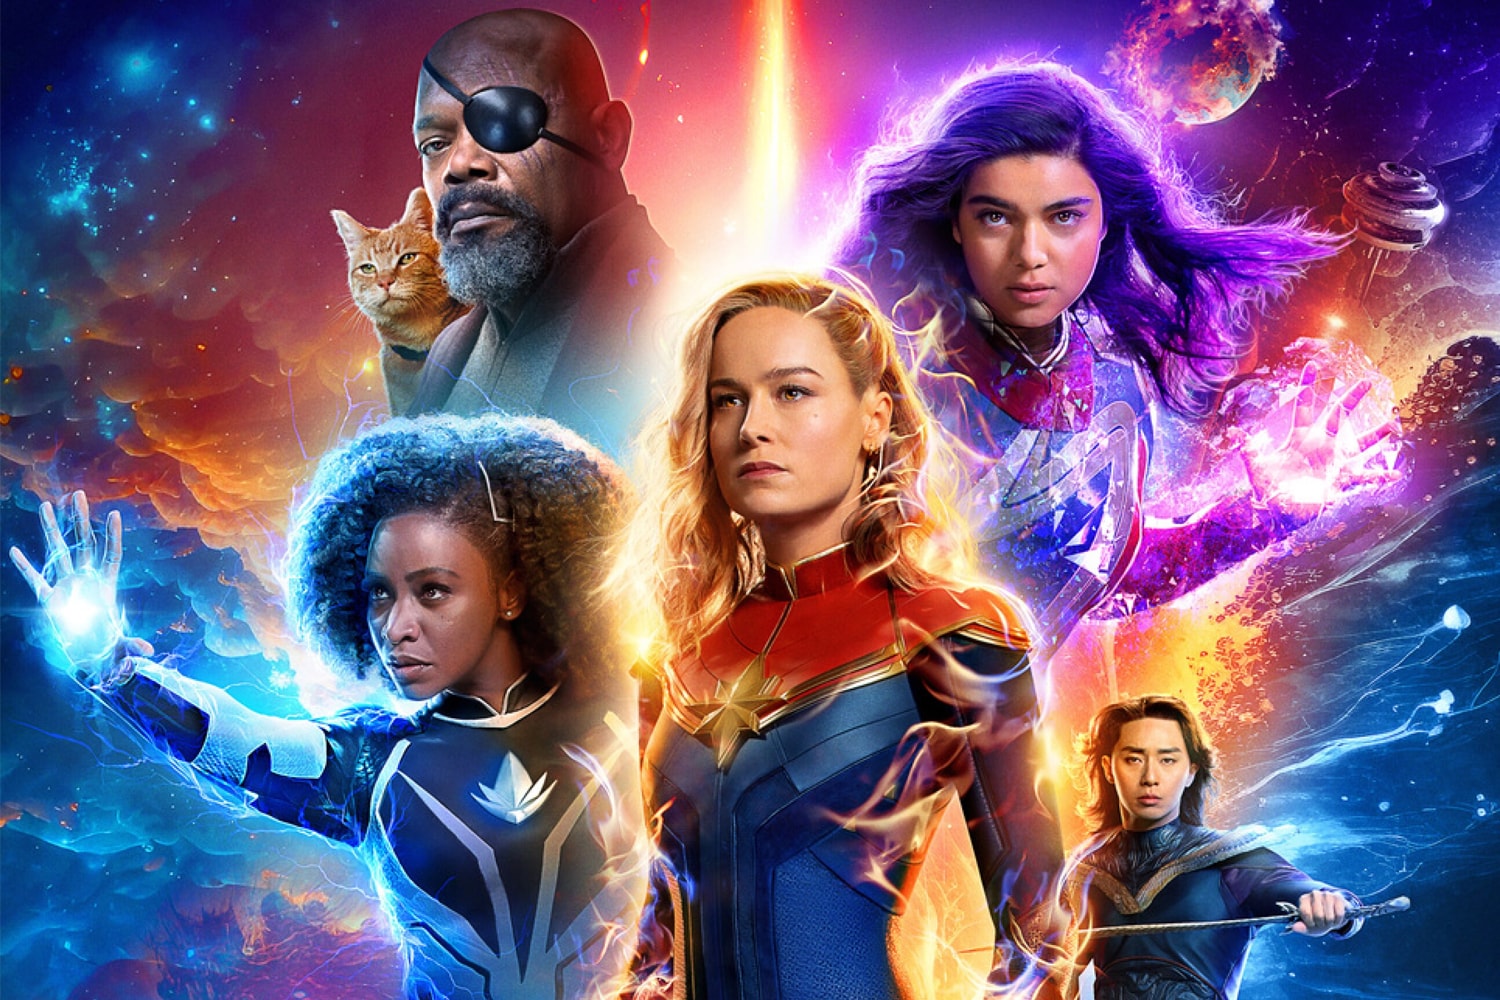 消息稱 Marvel 最新英雄大作《驚奇隊長 2》預售票表現不如《黑亞當》與《閃電俠》